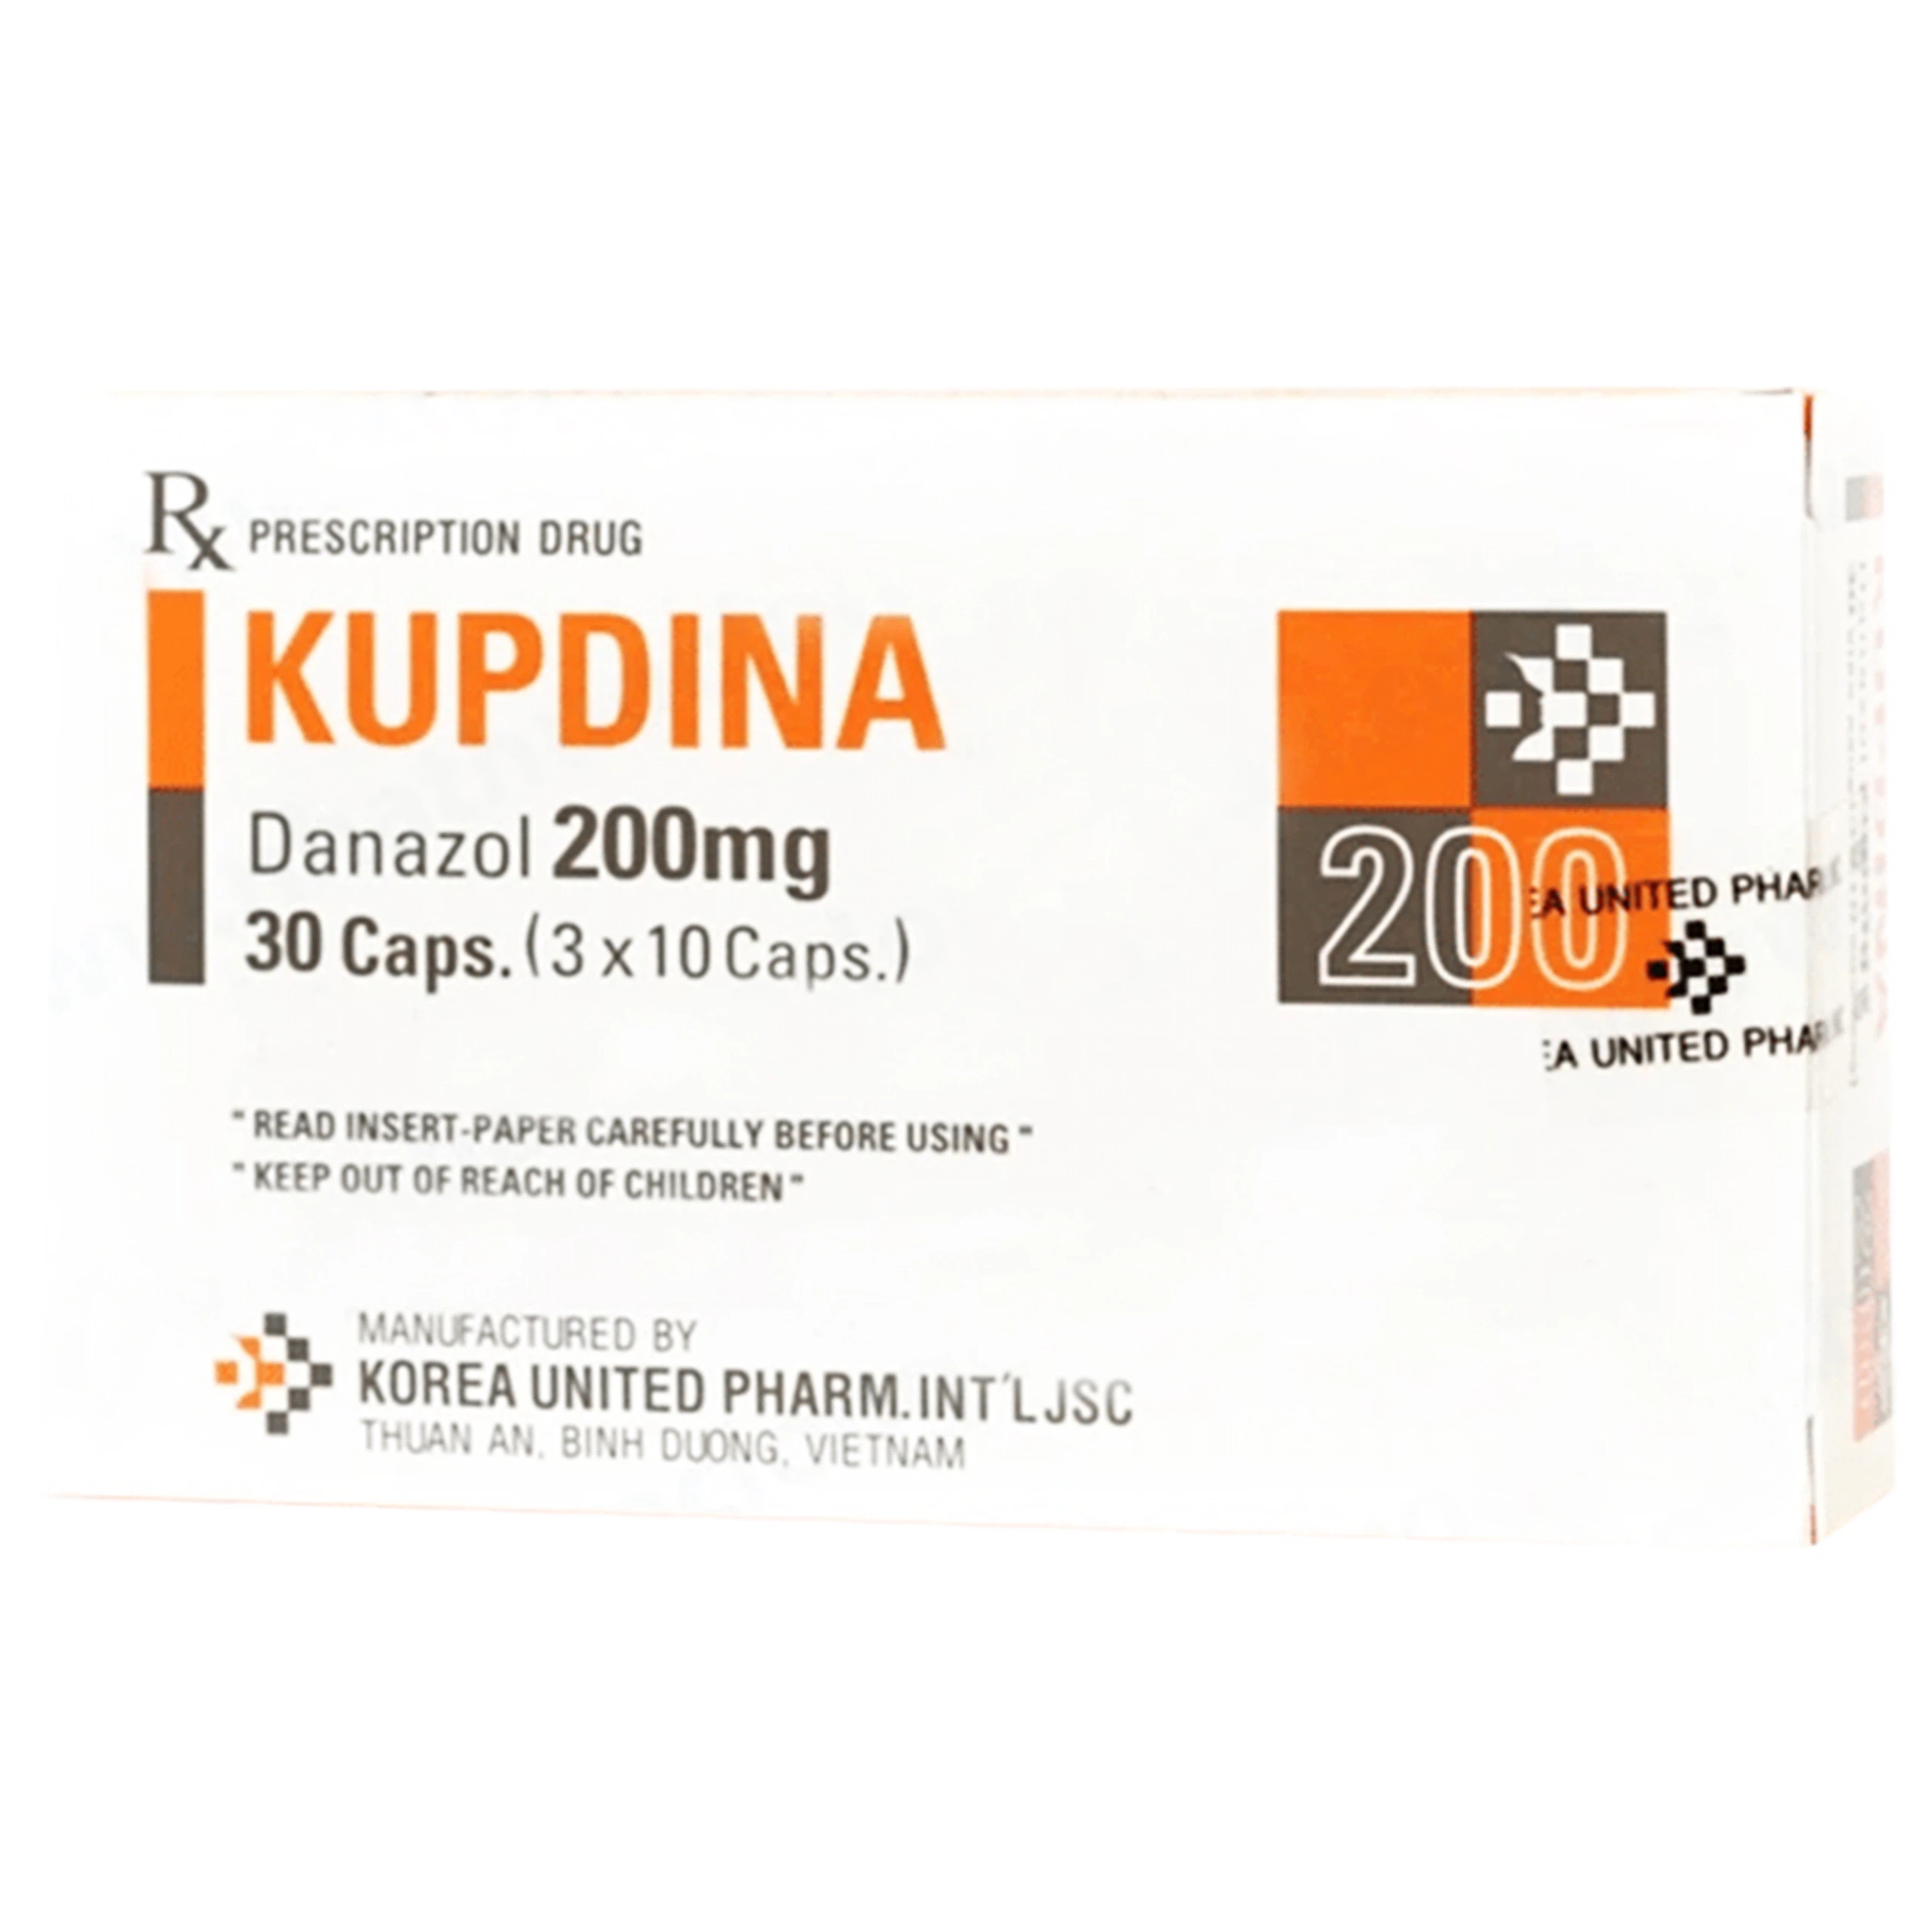 Viên nang cứng Kupdina 200mg Korea United Pharm điều trị đau trong lạc nội mạc tử cung, u xơ tuyến vú (3 vỉ x 10 viên)